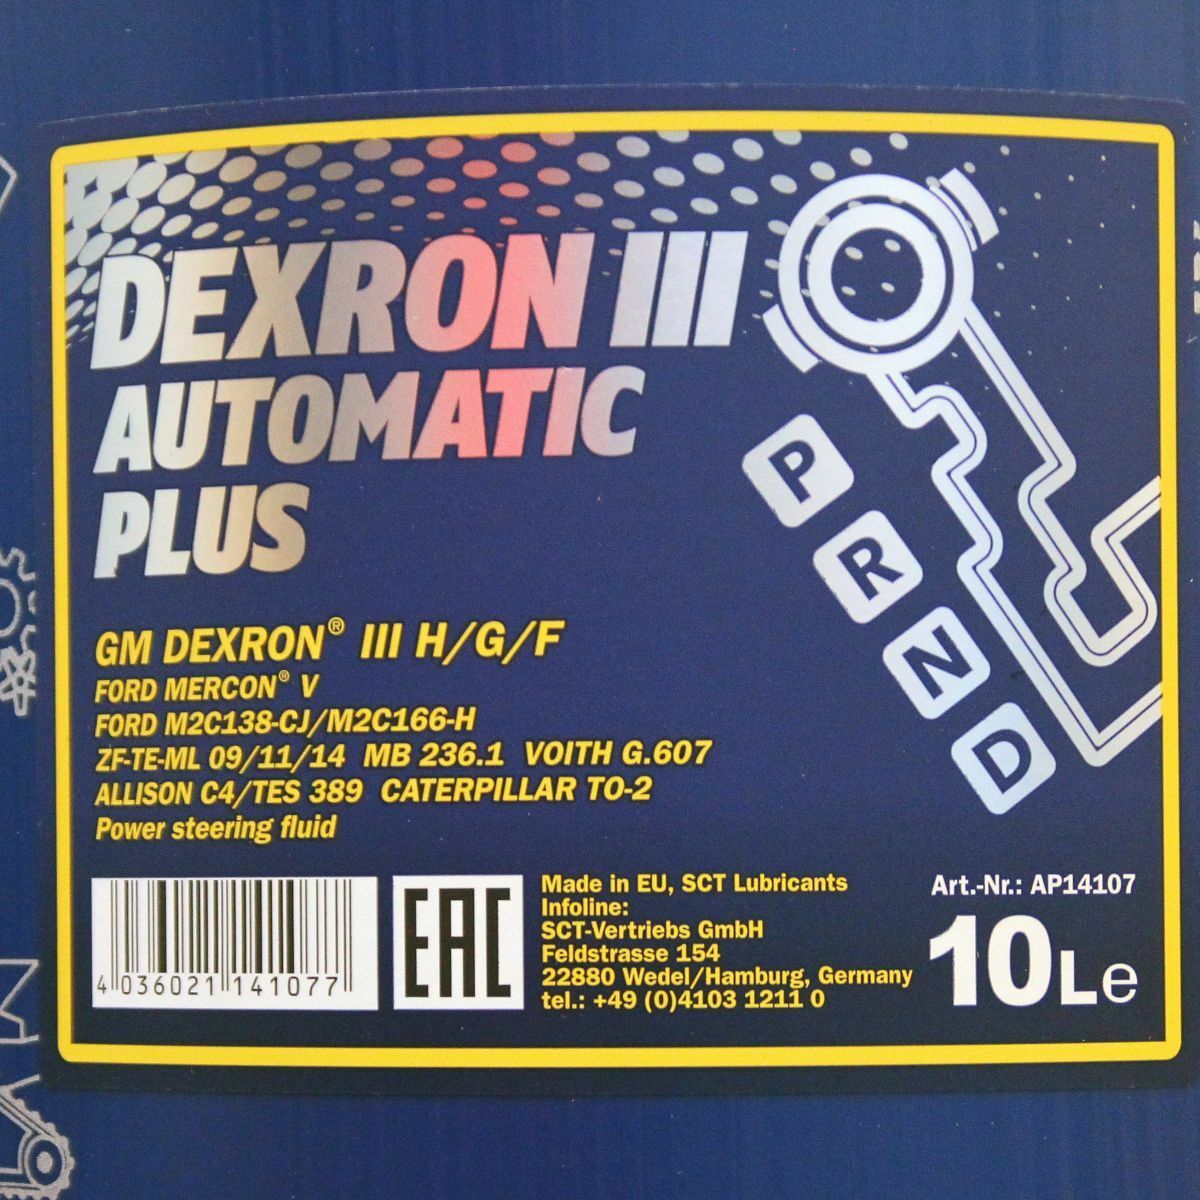 20L (2x10) MANNOL 8206 Dexron III H G F Automatic Plus Automatikgetriebeöl MB 236.1 ATF